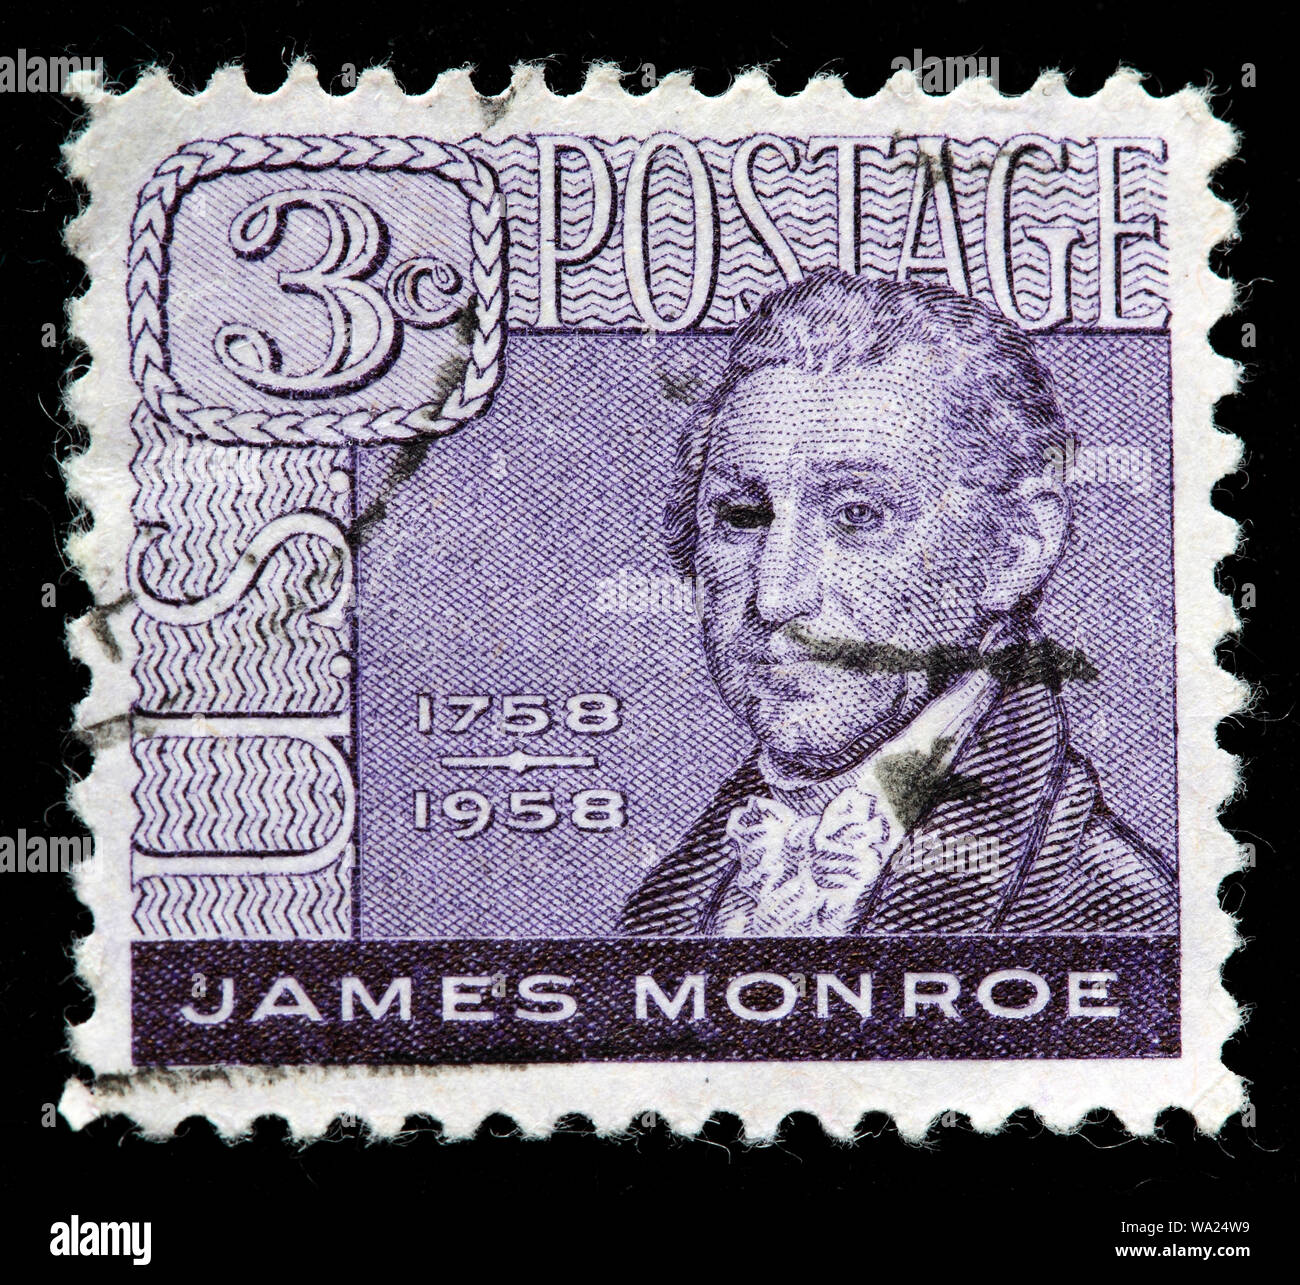 James Monroe (1758-1831), President of USA, postage stamp, USA, 1958 Stock Photo